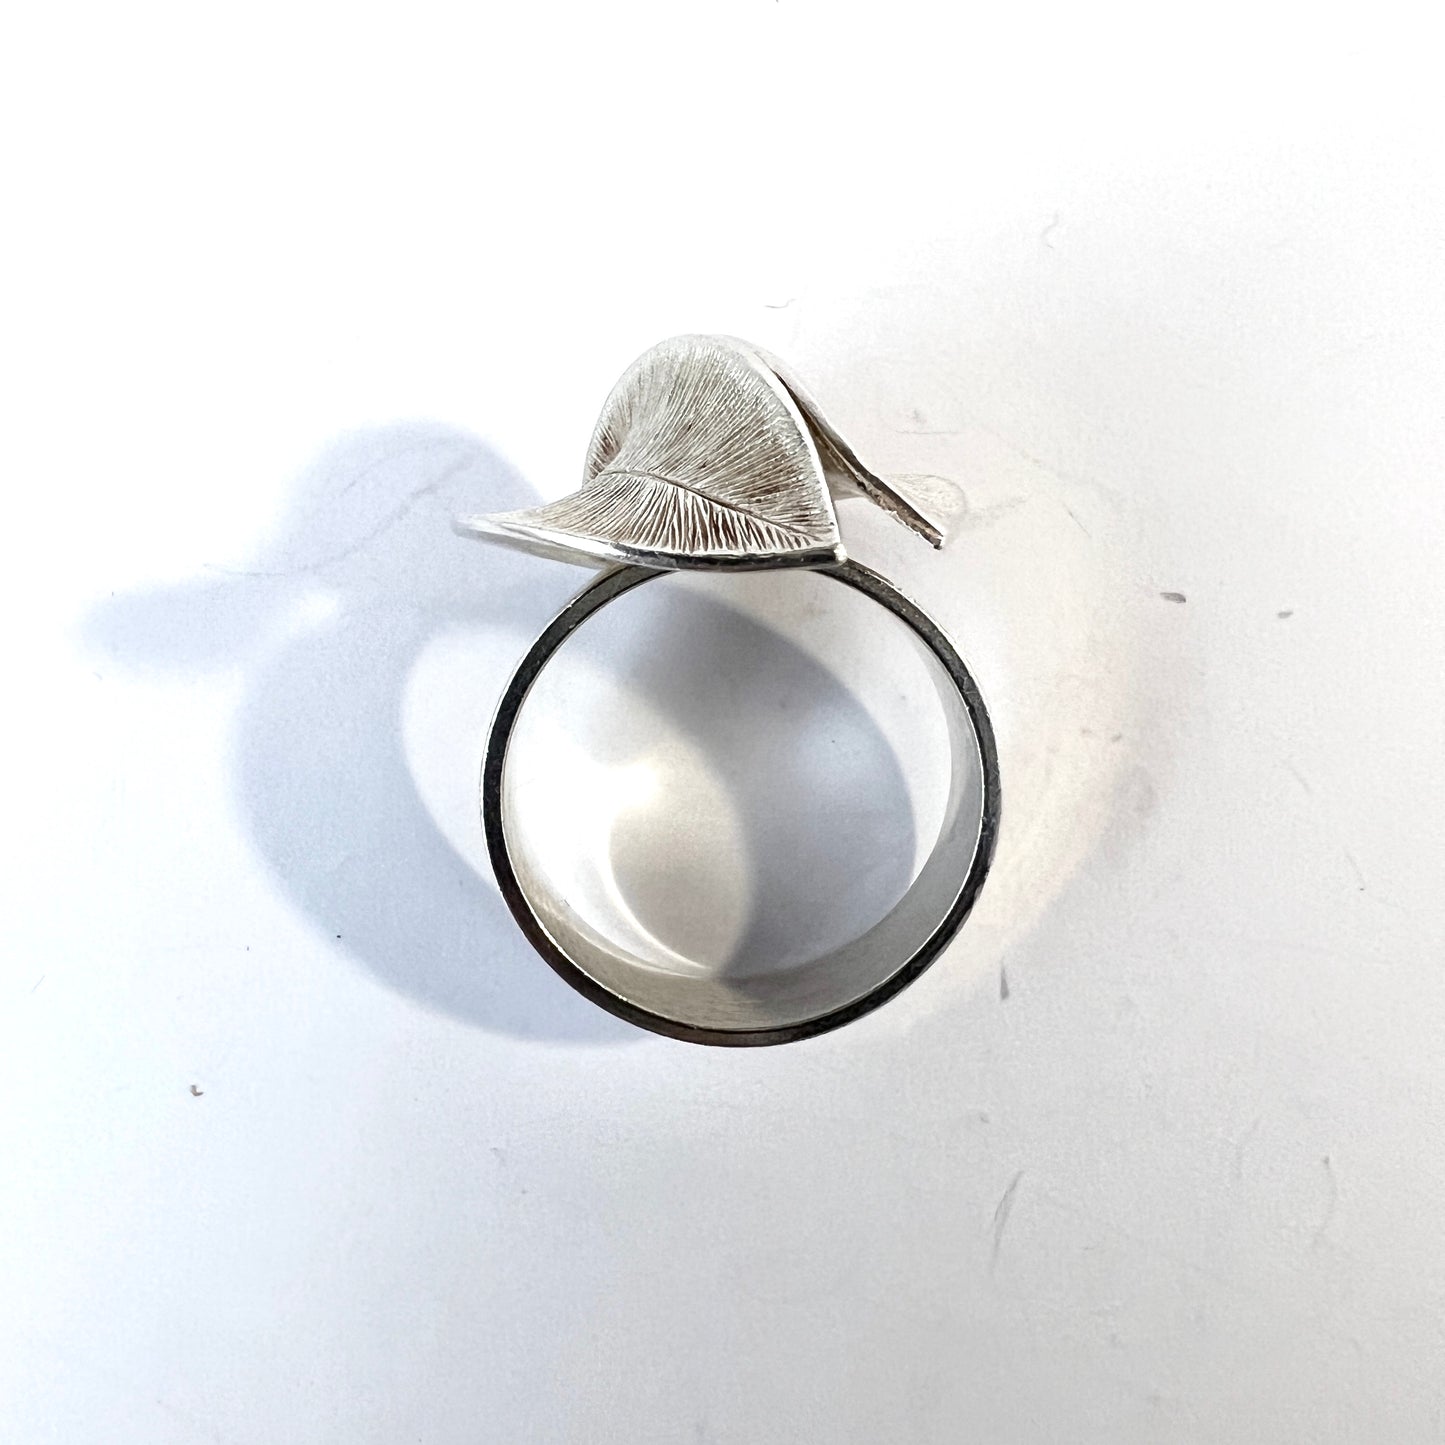 Kalevala Koru, Finland. Vintage Sterling Silver Ring. Design Snow Flower.